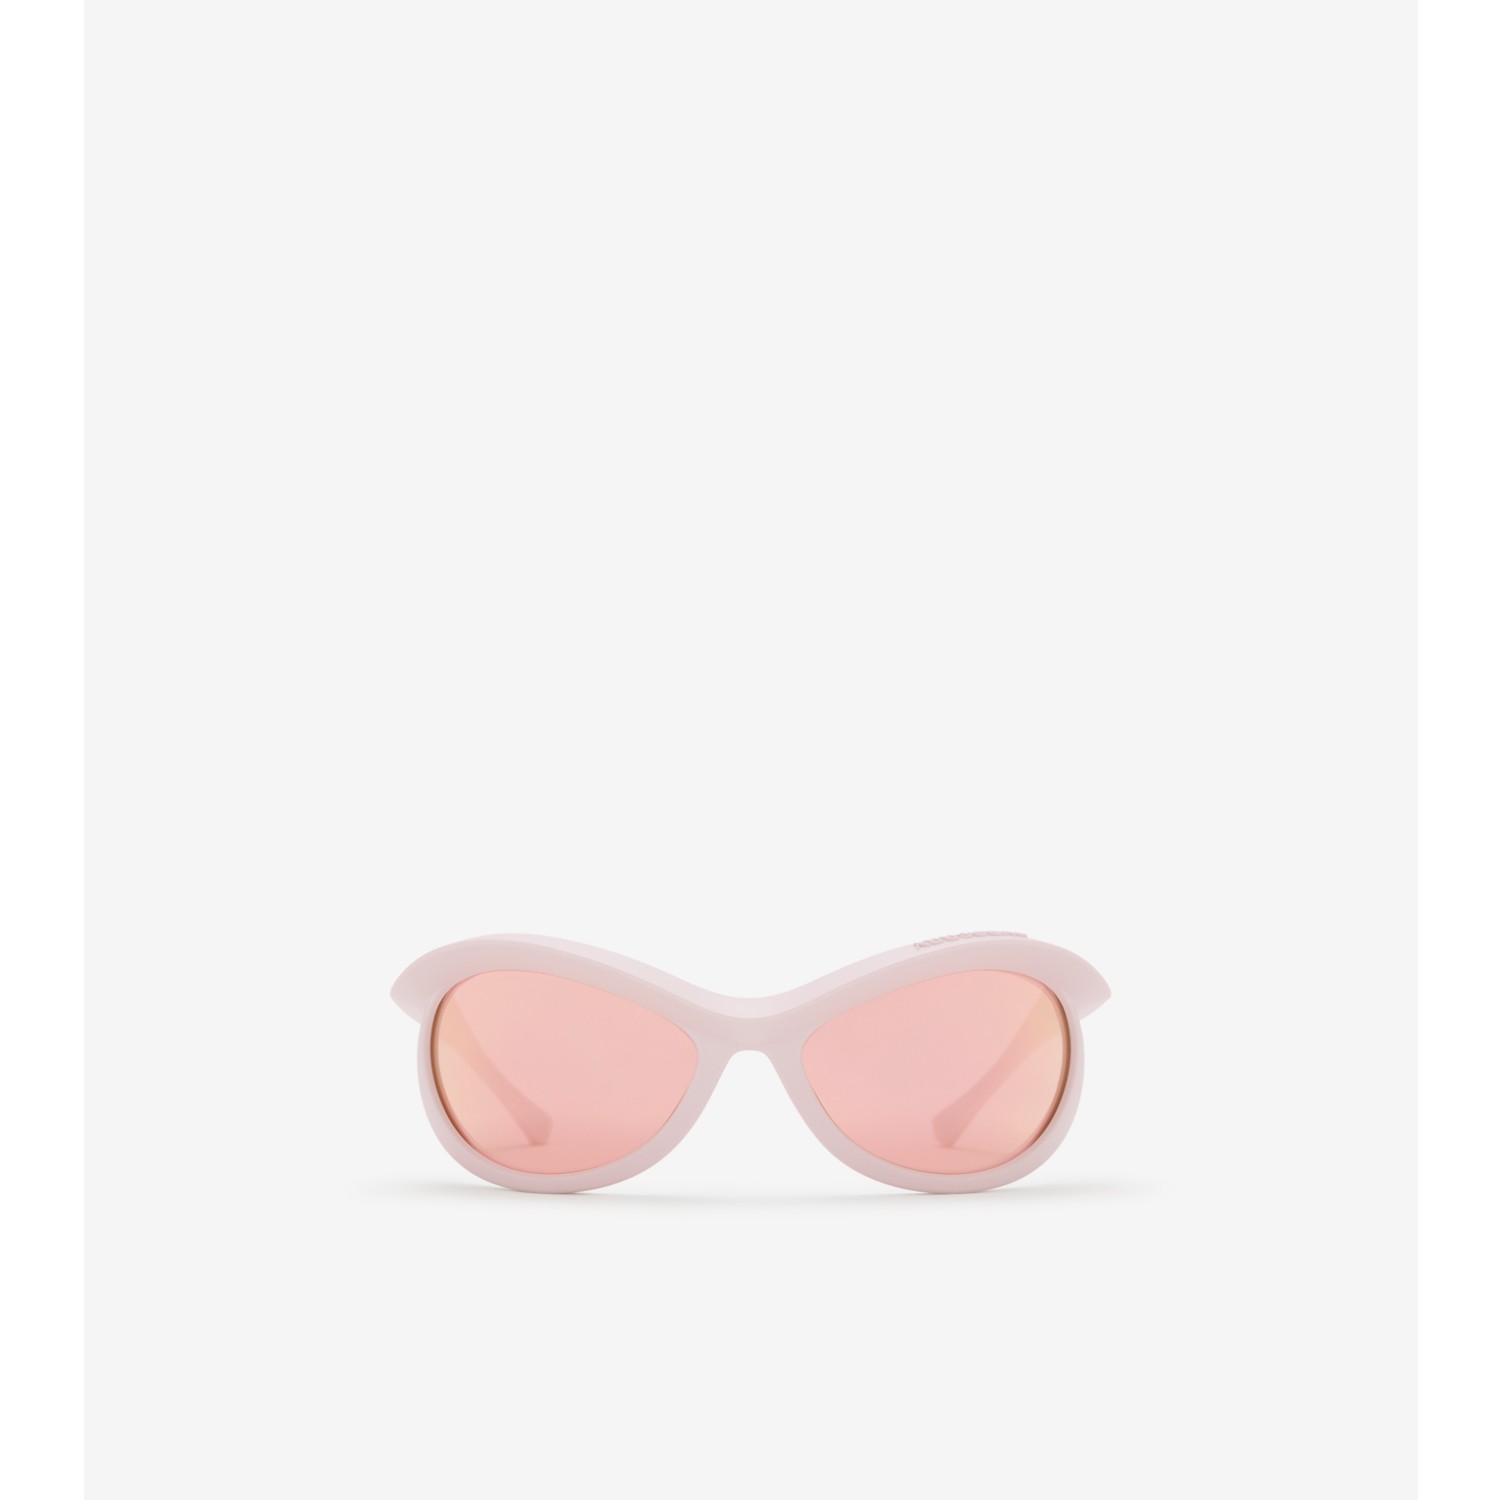 Blinker Sunglasses